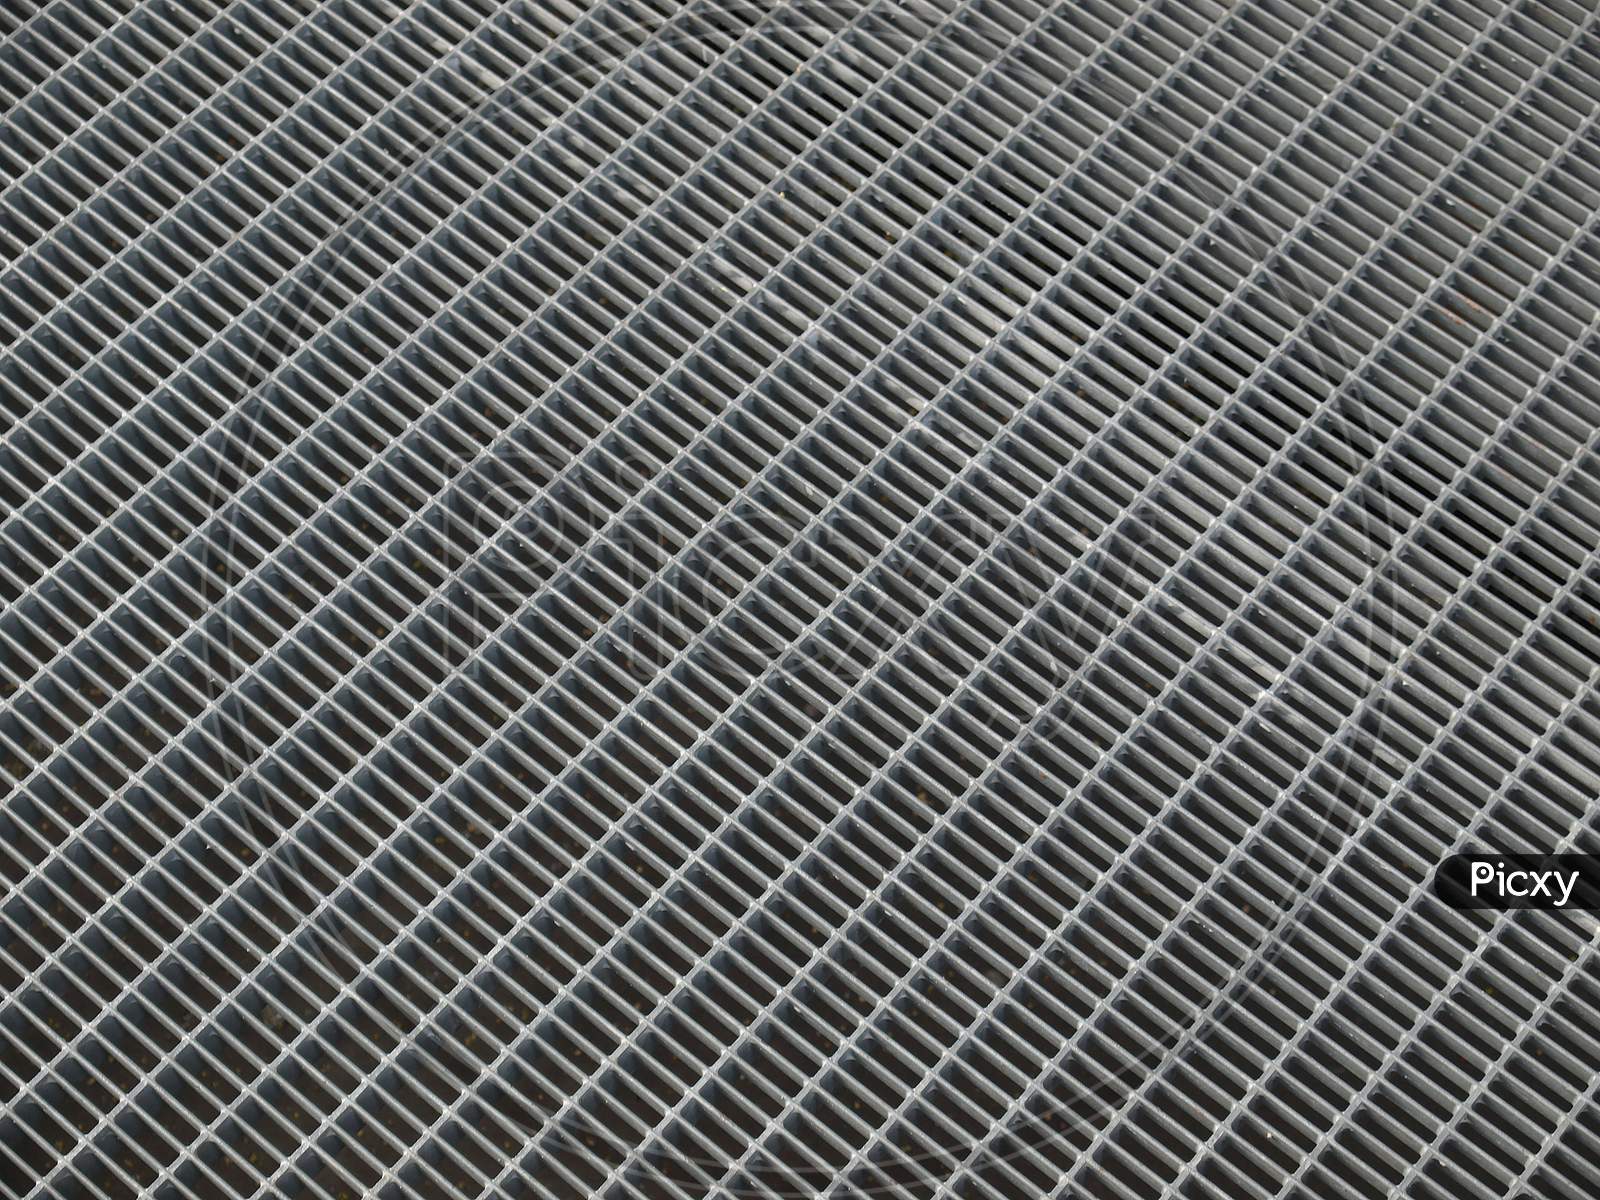 Stainless Steel Grid Mesh